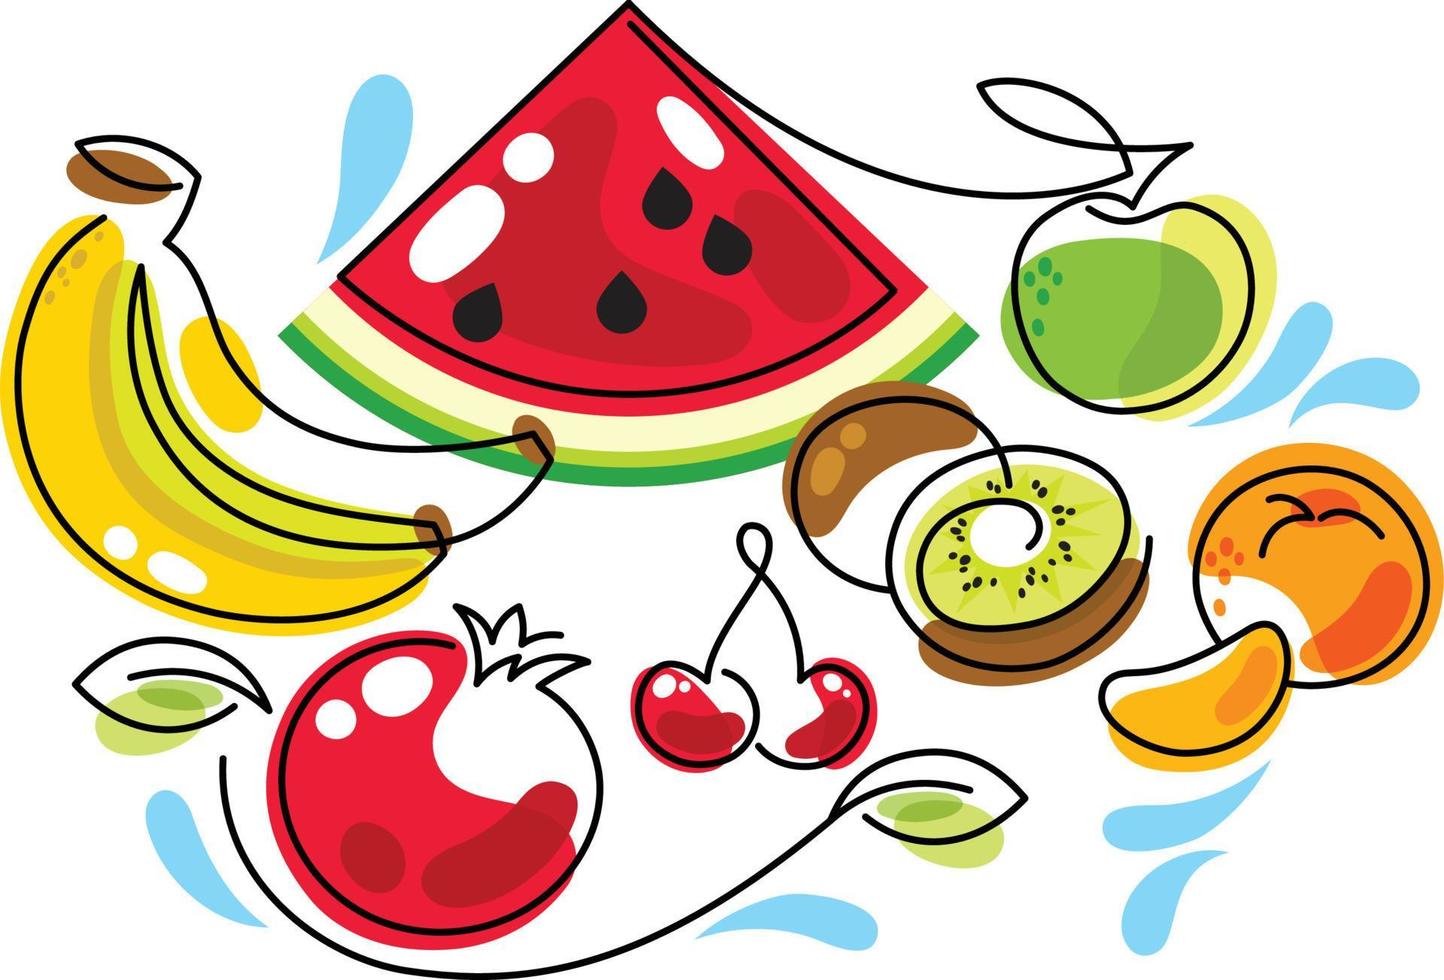 anguria, banane, mela, kiwi, mandarino, melograno, ciliegia. carino illustrazione semplificata di bacche e frutti. vettore